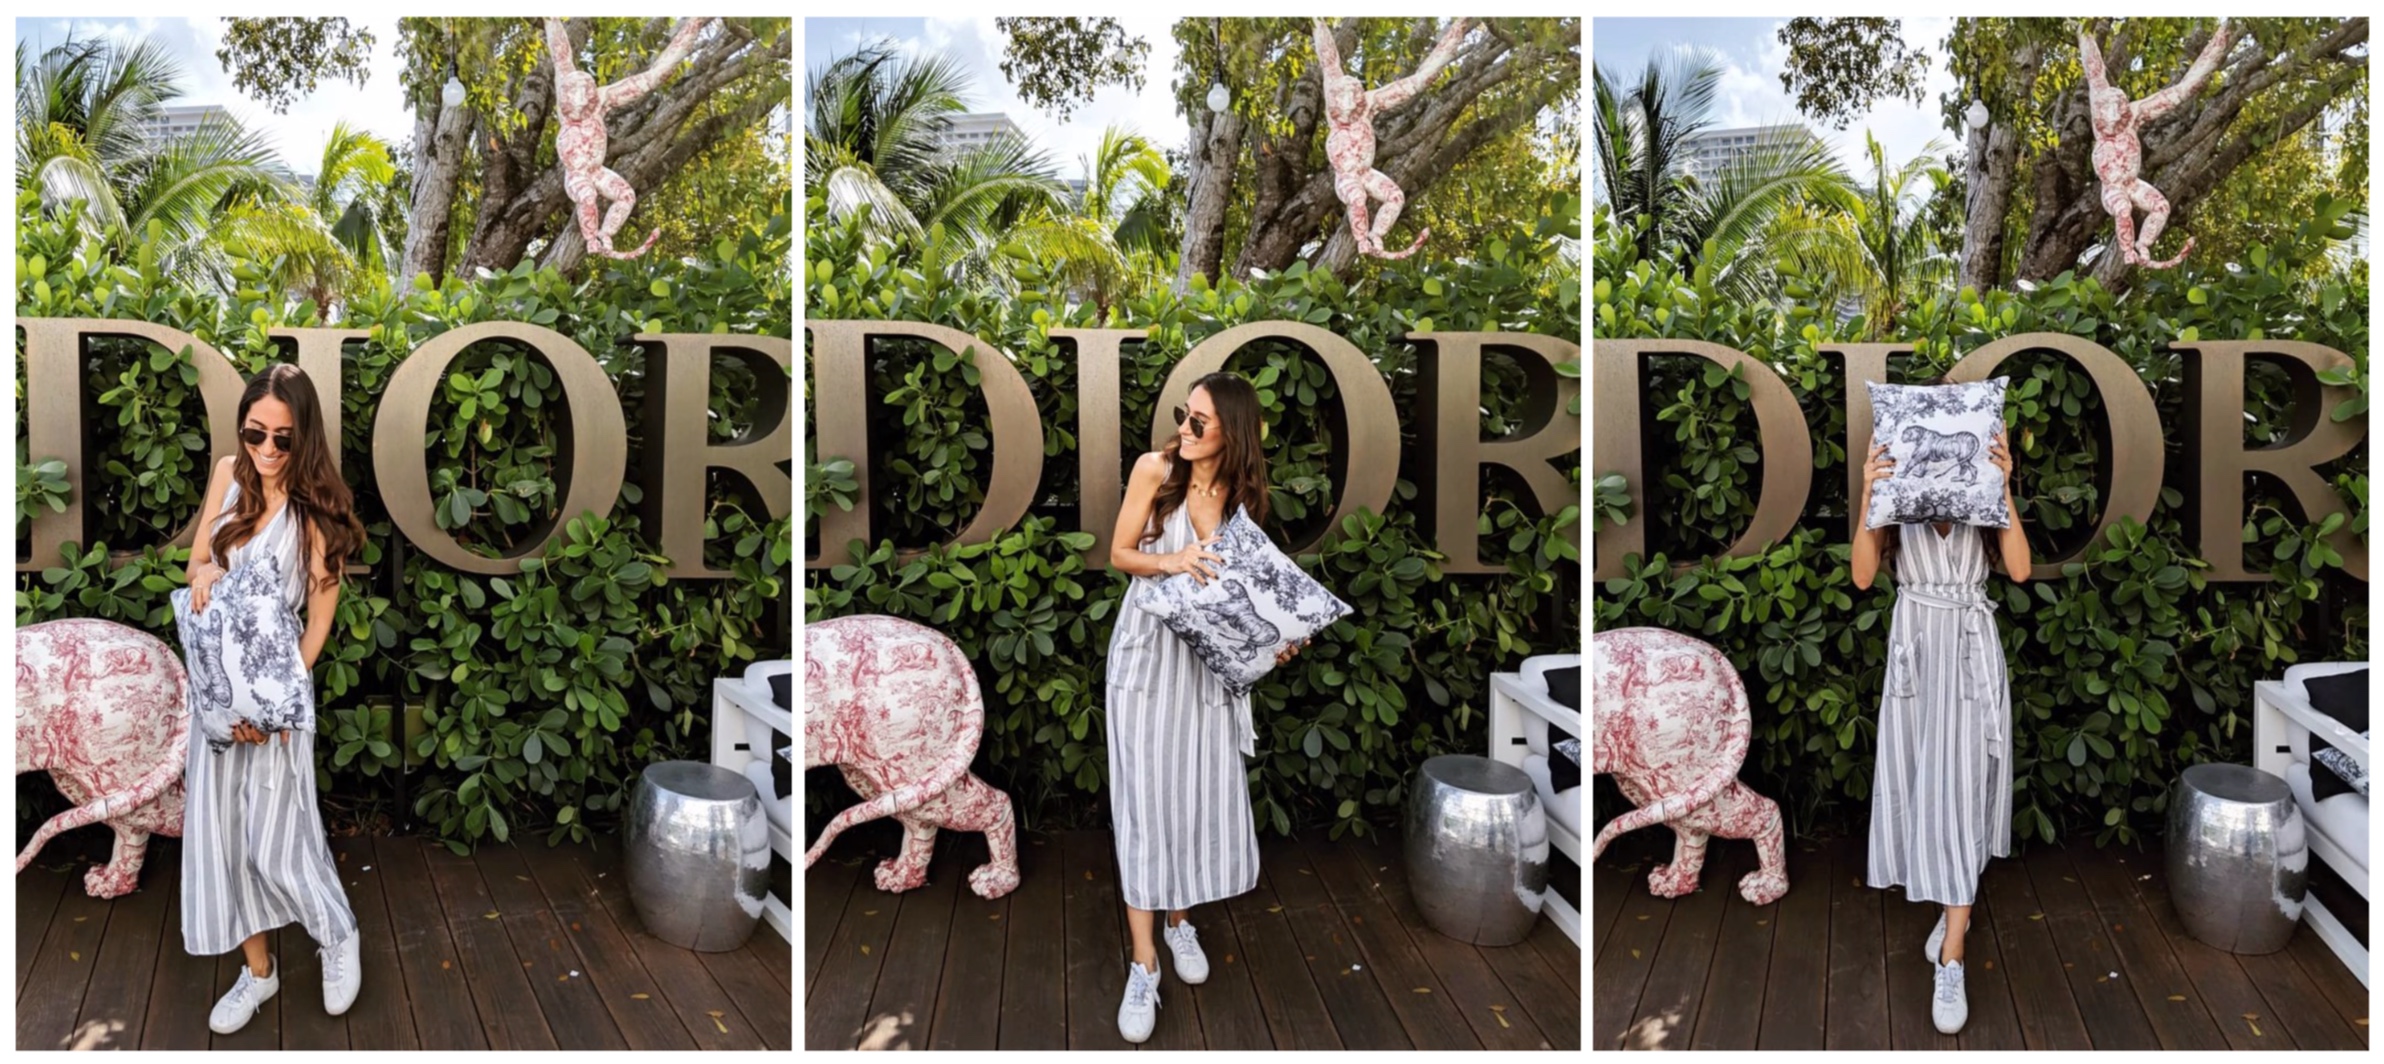 Do I Adore Cafe Dior? — Nora Gharib